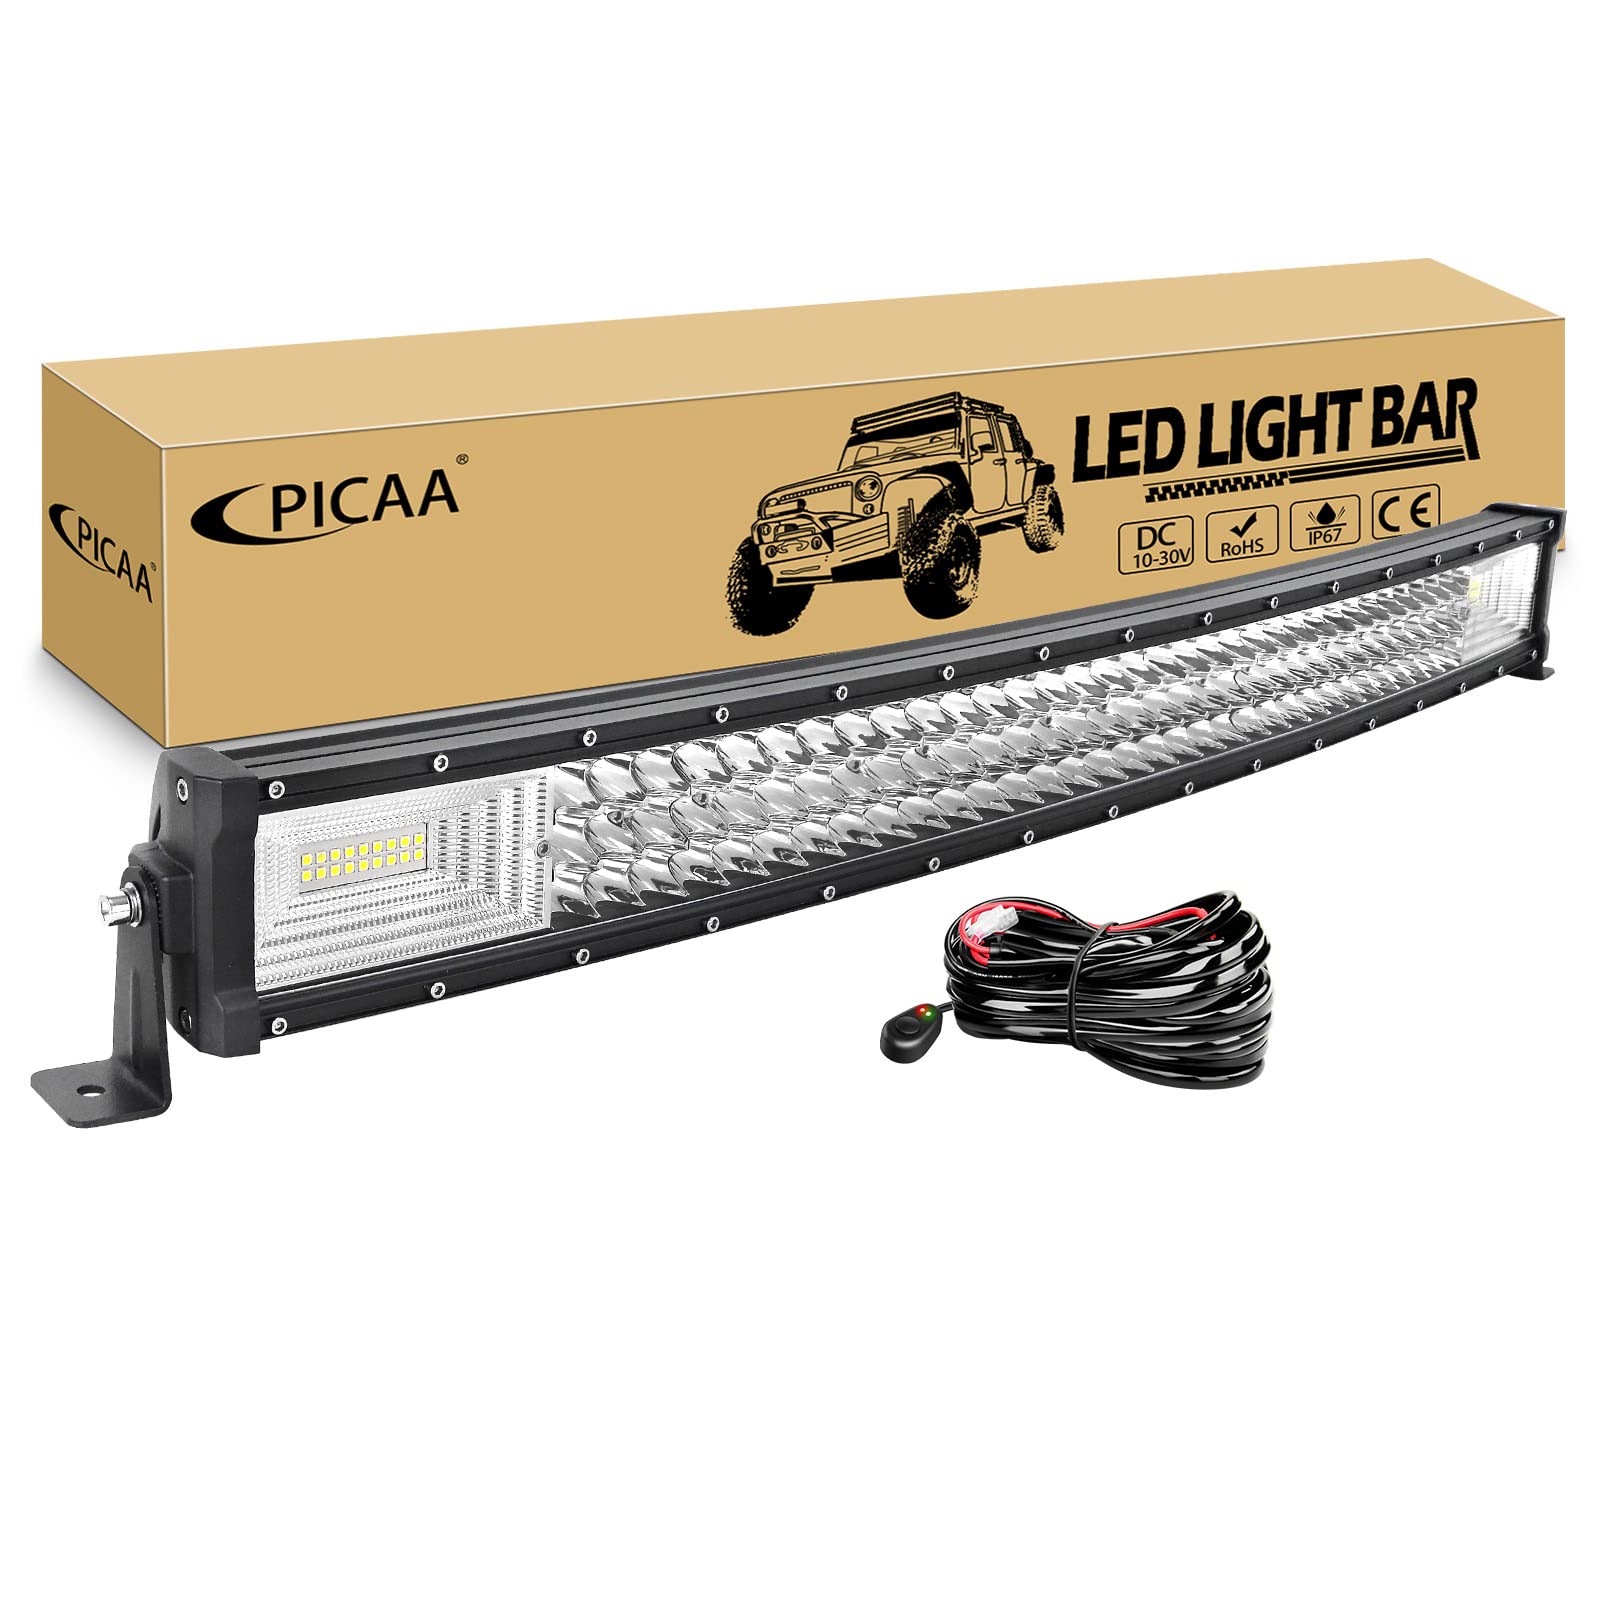 PICAA Gebogene LED Lightbar 32 Zoll 405W mit 12V Kabelbaum Kit, Tri-Reihen Spot Flood Combo Lichtbalken Arbeitsscheinwerfer für Auto Offroad 4X4 SUV LKW ATV von PICAA